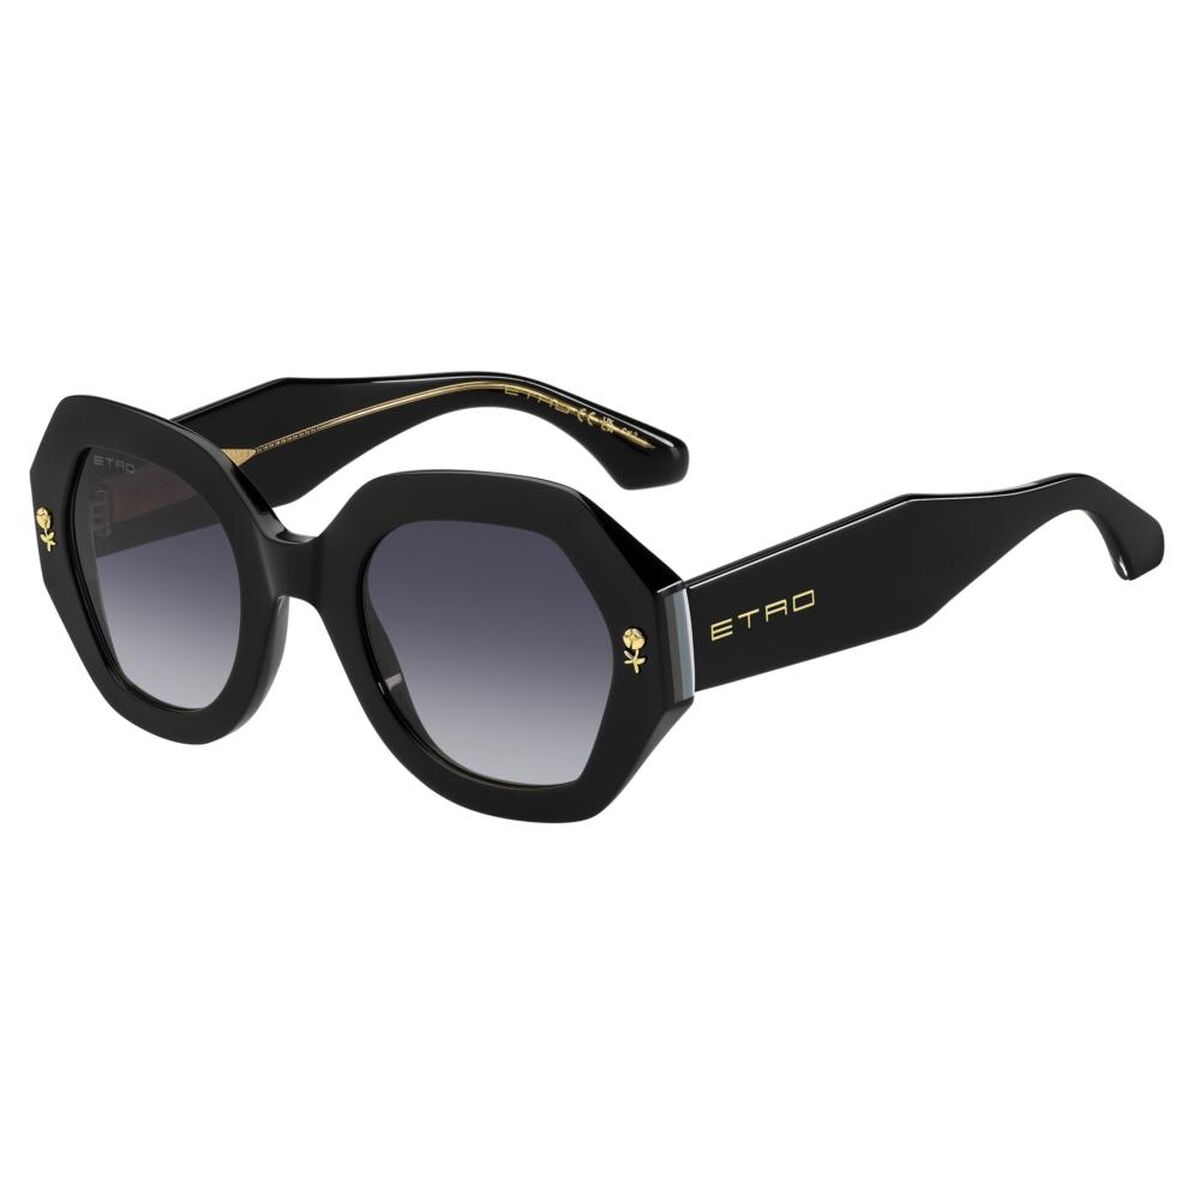 Kaufe Damensonnenbrille Etro ETRO 0009_S bei AWK Flagship um € 233.00